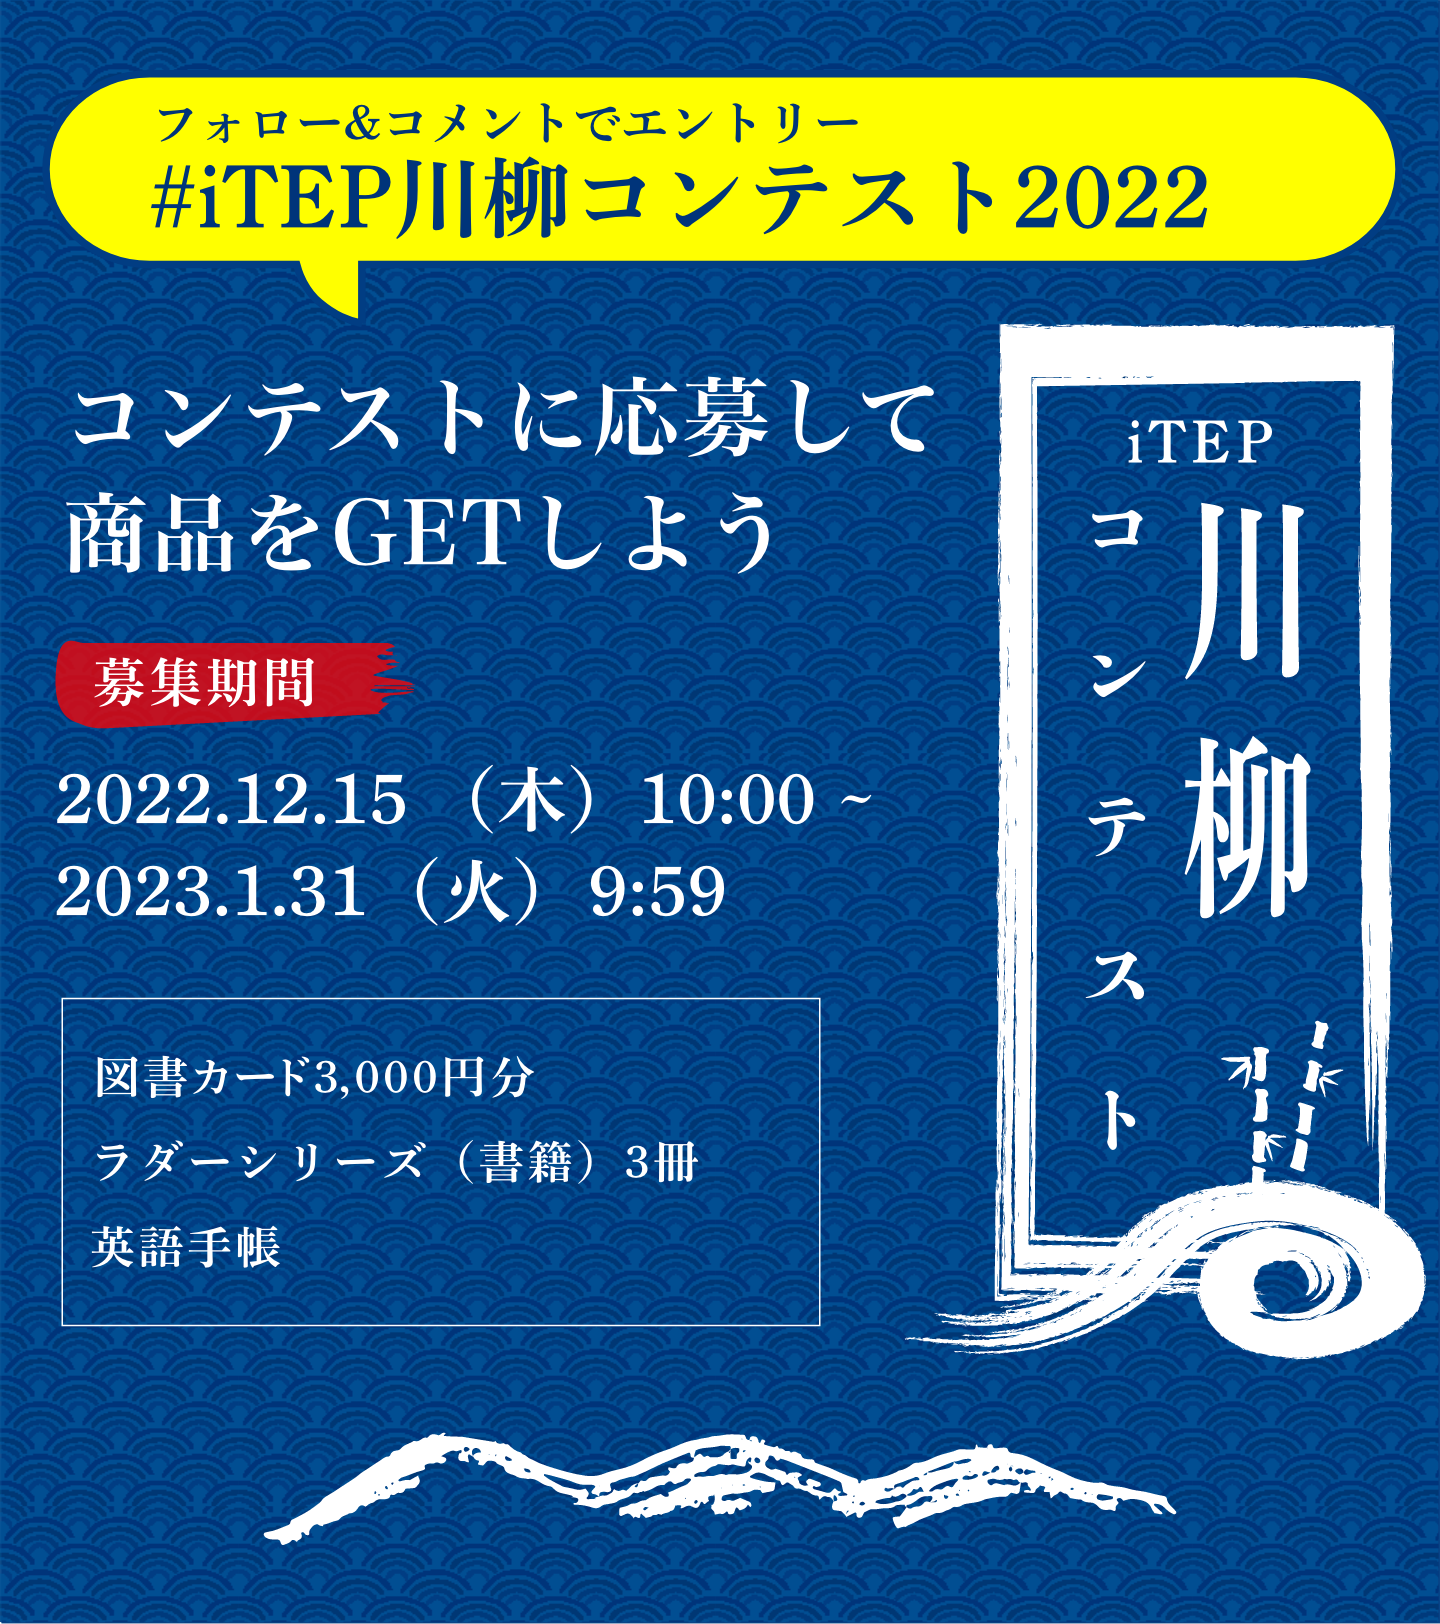 #iTEP川柳コンテスト2022